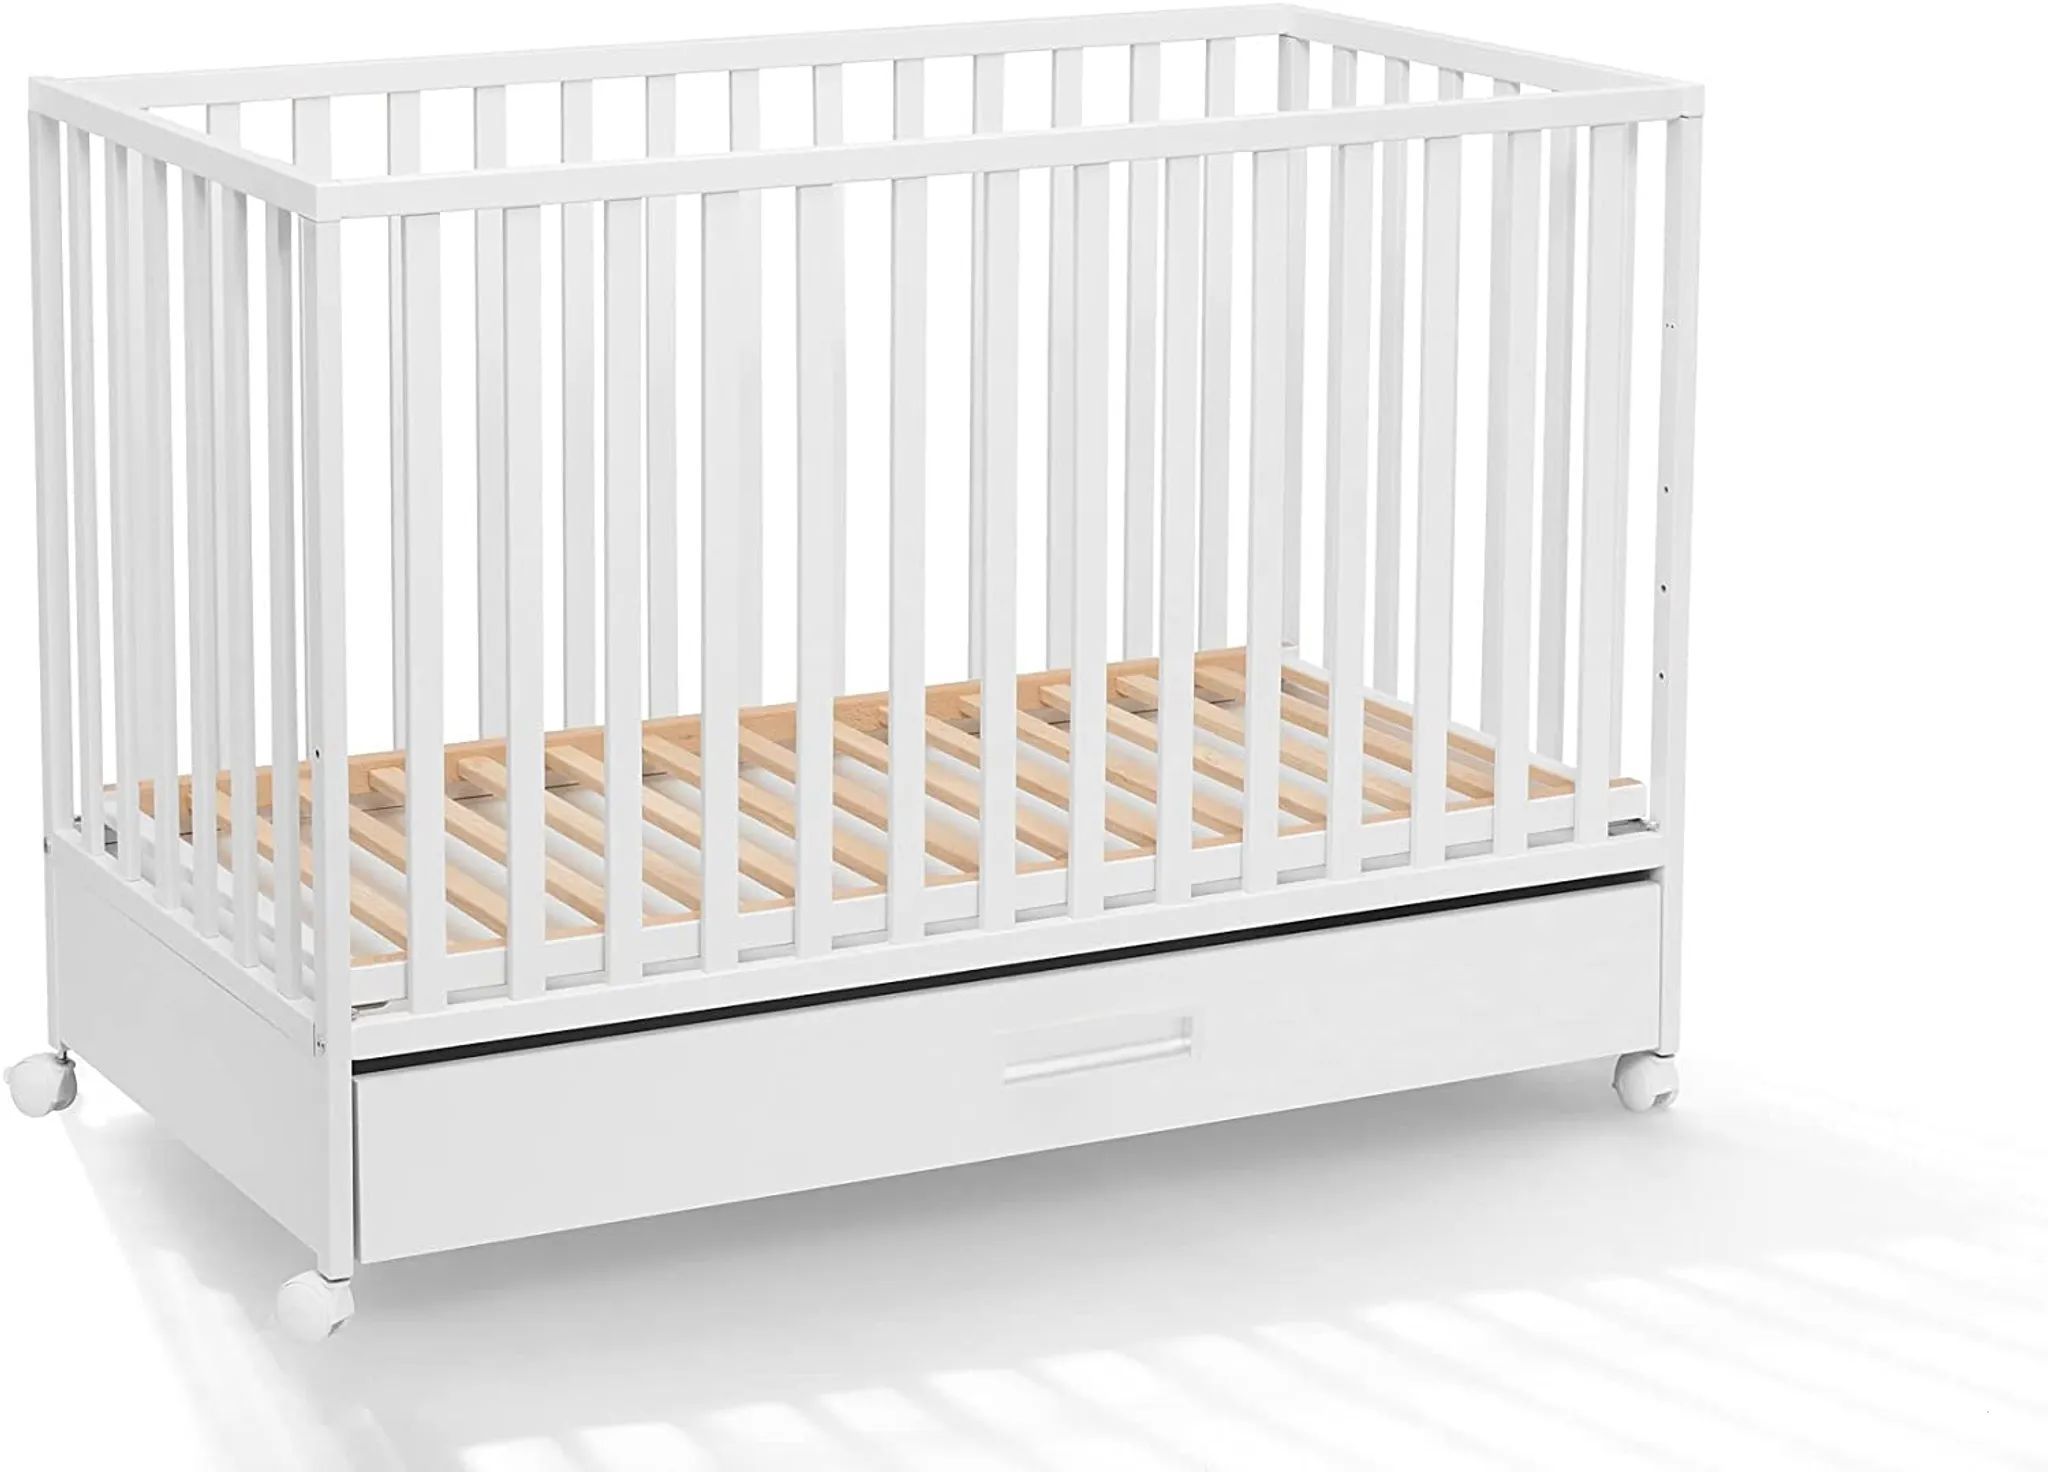 ATB MEBLE Babybett mit Schublade , LUX KOLLEKTION , Beistellbett Baby , Kinderbett mit Rädern, drei Ebenen der Matratzenhöhe 120 x 60 cm , Weiß